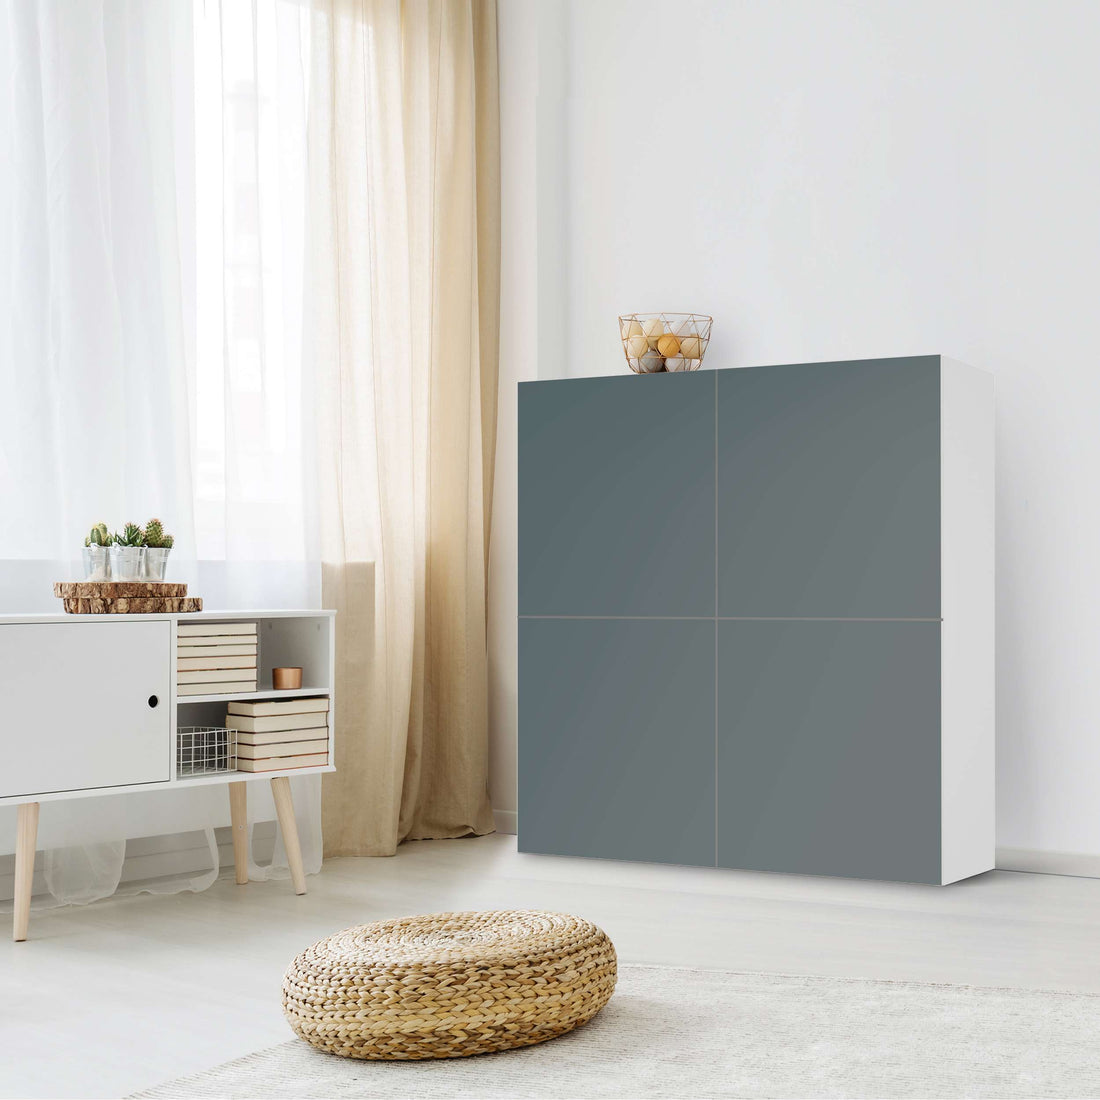 Klebefolie für Schränke Blaugrau Light - IKEA Besta Schrank Quadratisch 4 Türen - Wohnzimmer